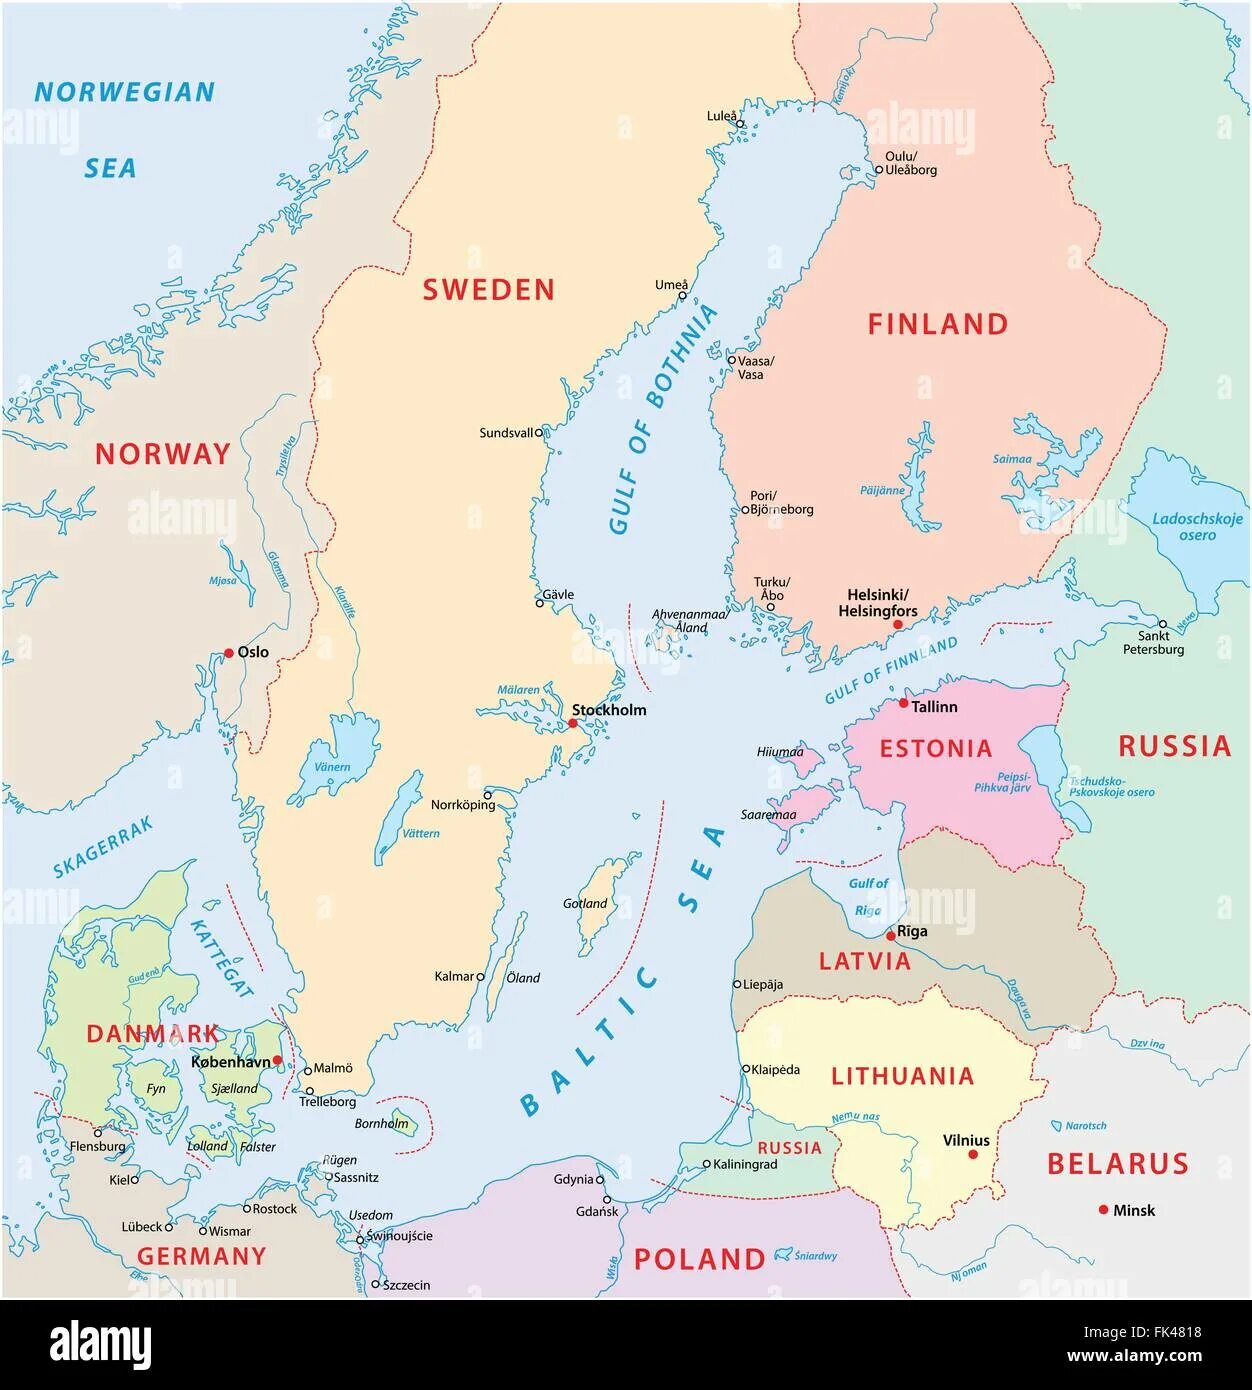 Готланд на карте балтийского моря кому принадлежит. Балтийское море на карте. Балтика на карте. Балтийское море карта со странами. Балтийское море политическая карта.